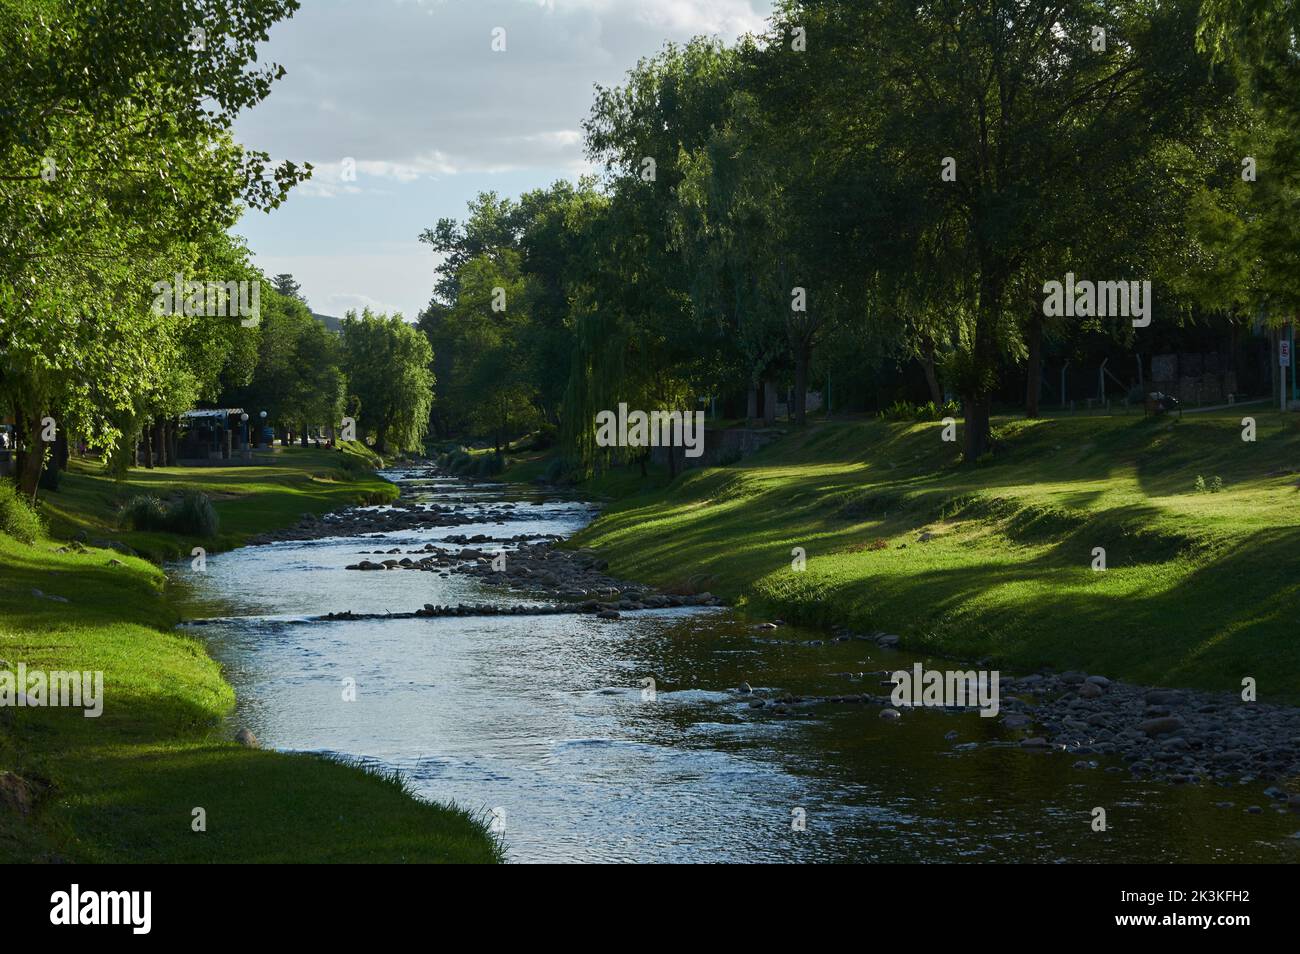 Eine schöne Aussicht auf einen Fluss in einem Park mit frischem Gras und grünen Bäumen Stockfoto